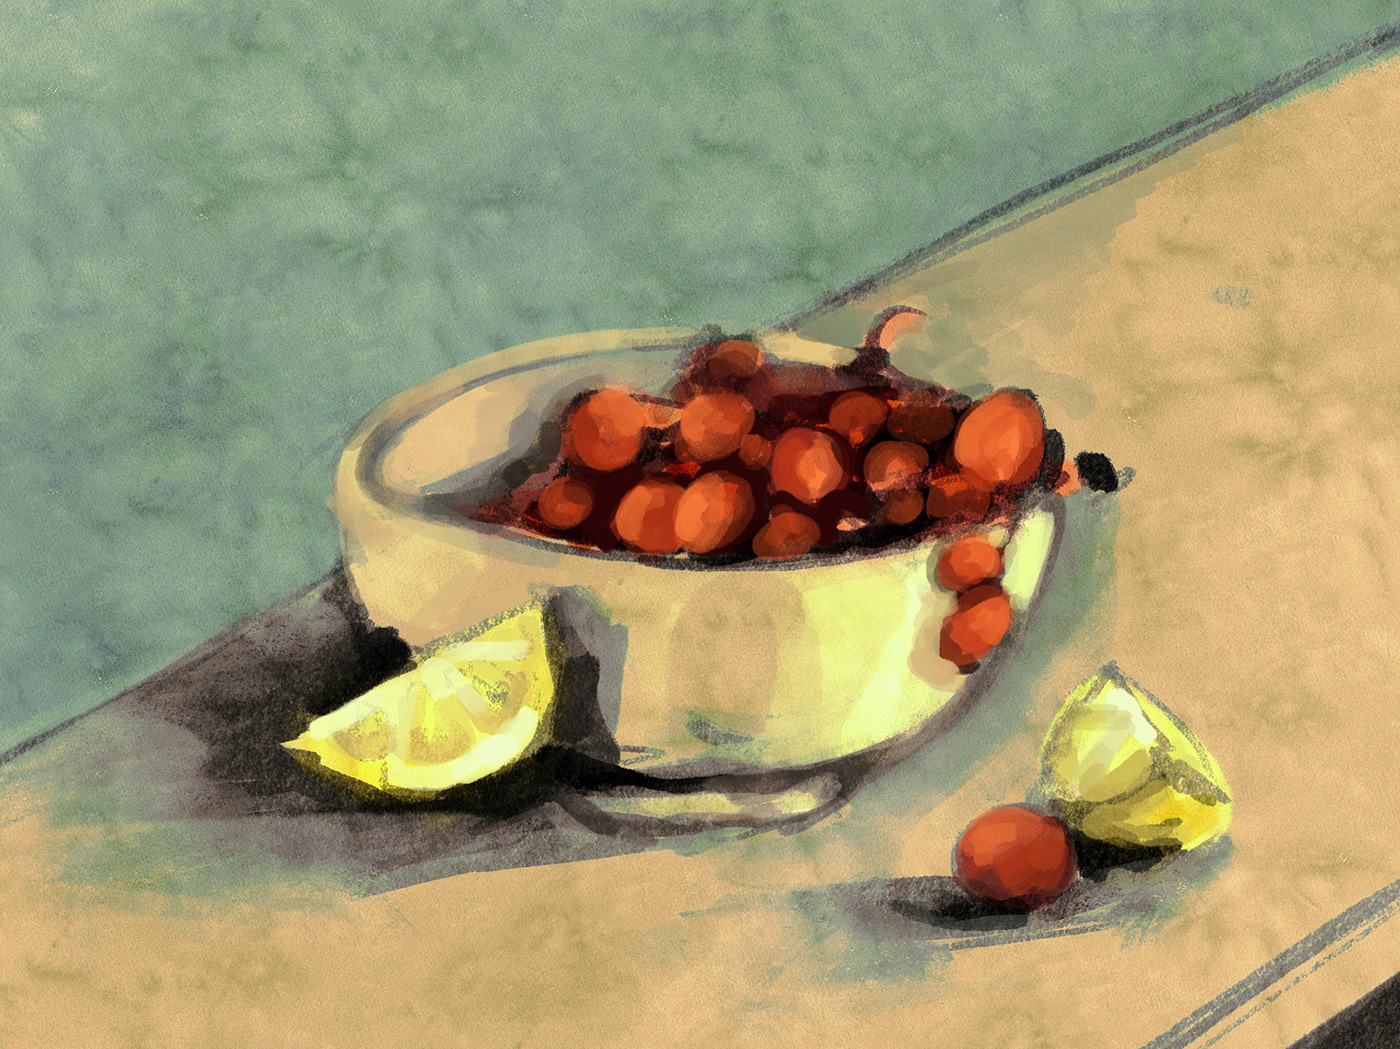 Digital Art  digital illustration ILLUSTRATION  Procreate digital painting sketch Fruit still life Food 